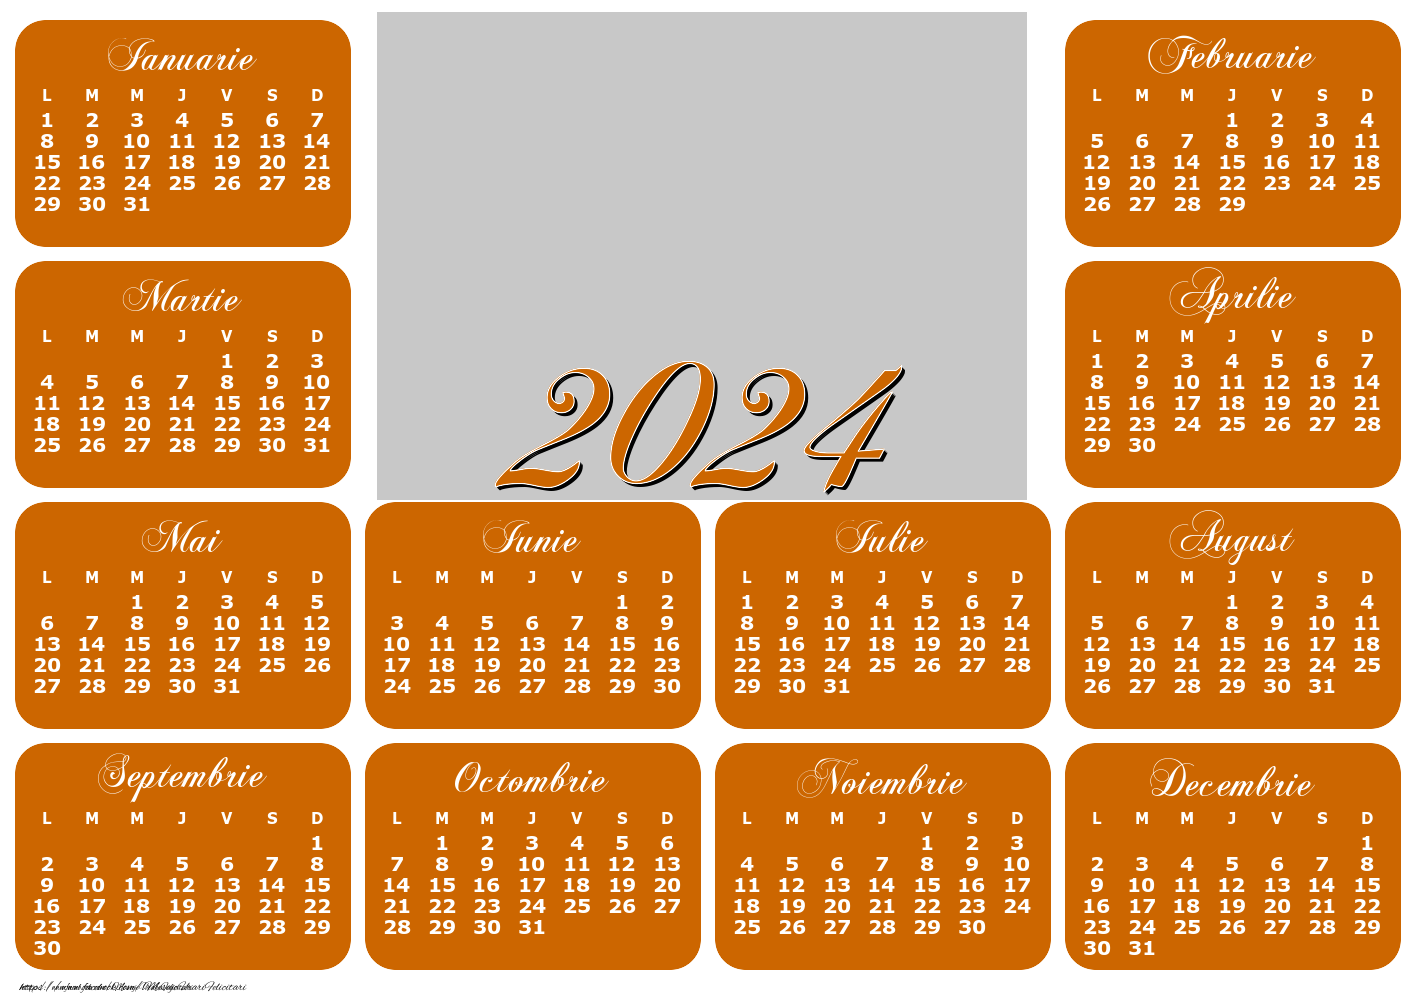 Felicitari personalizate cu calendare - Calendar 2024 cu poza ta